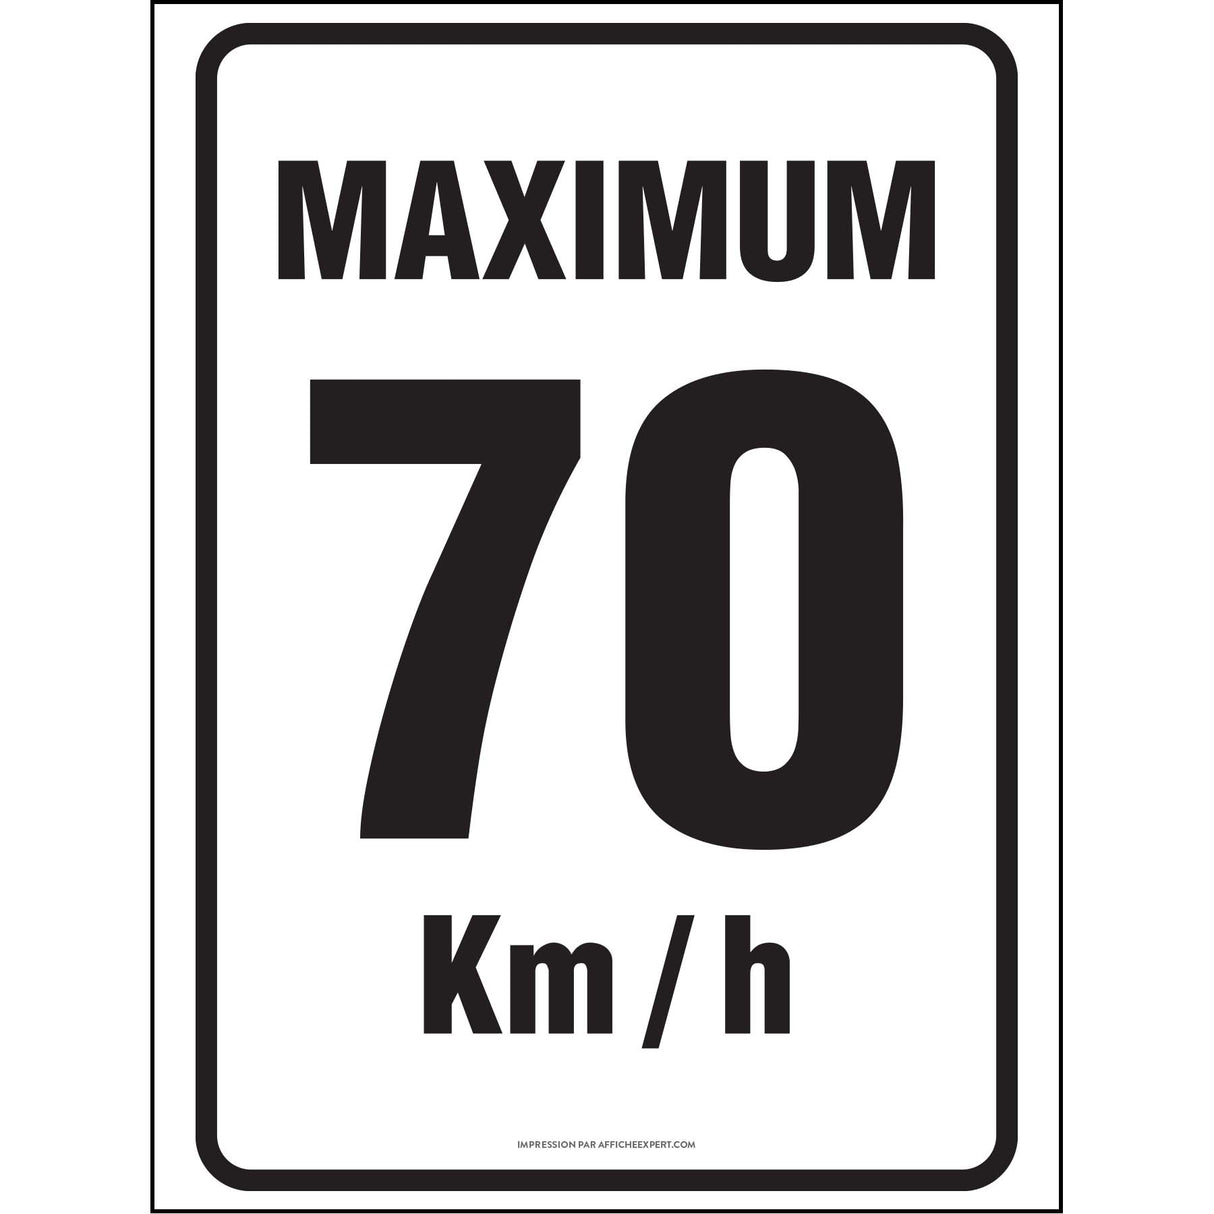 Maximum 70 km/h